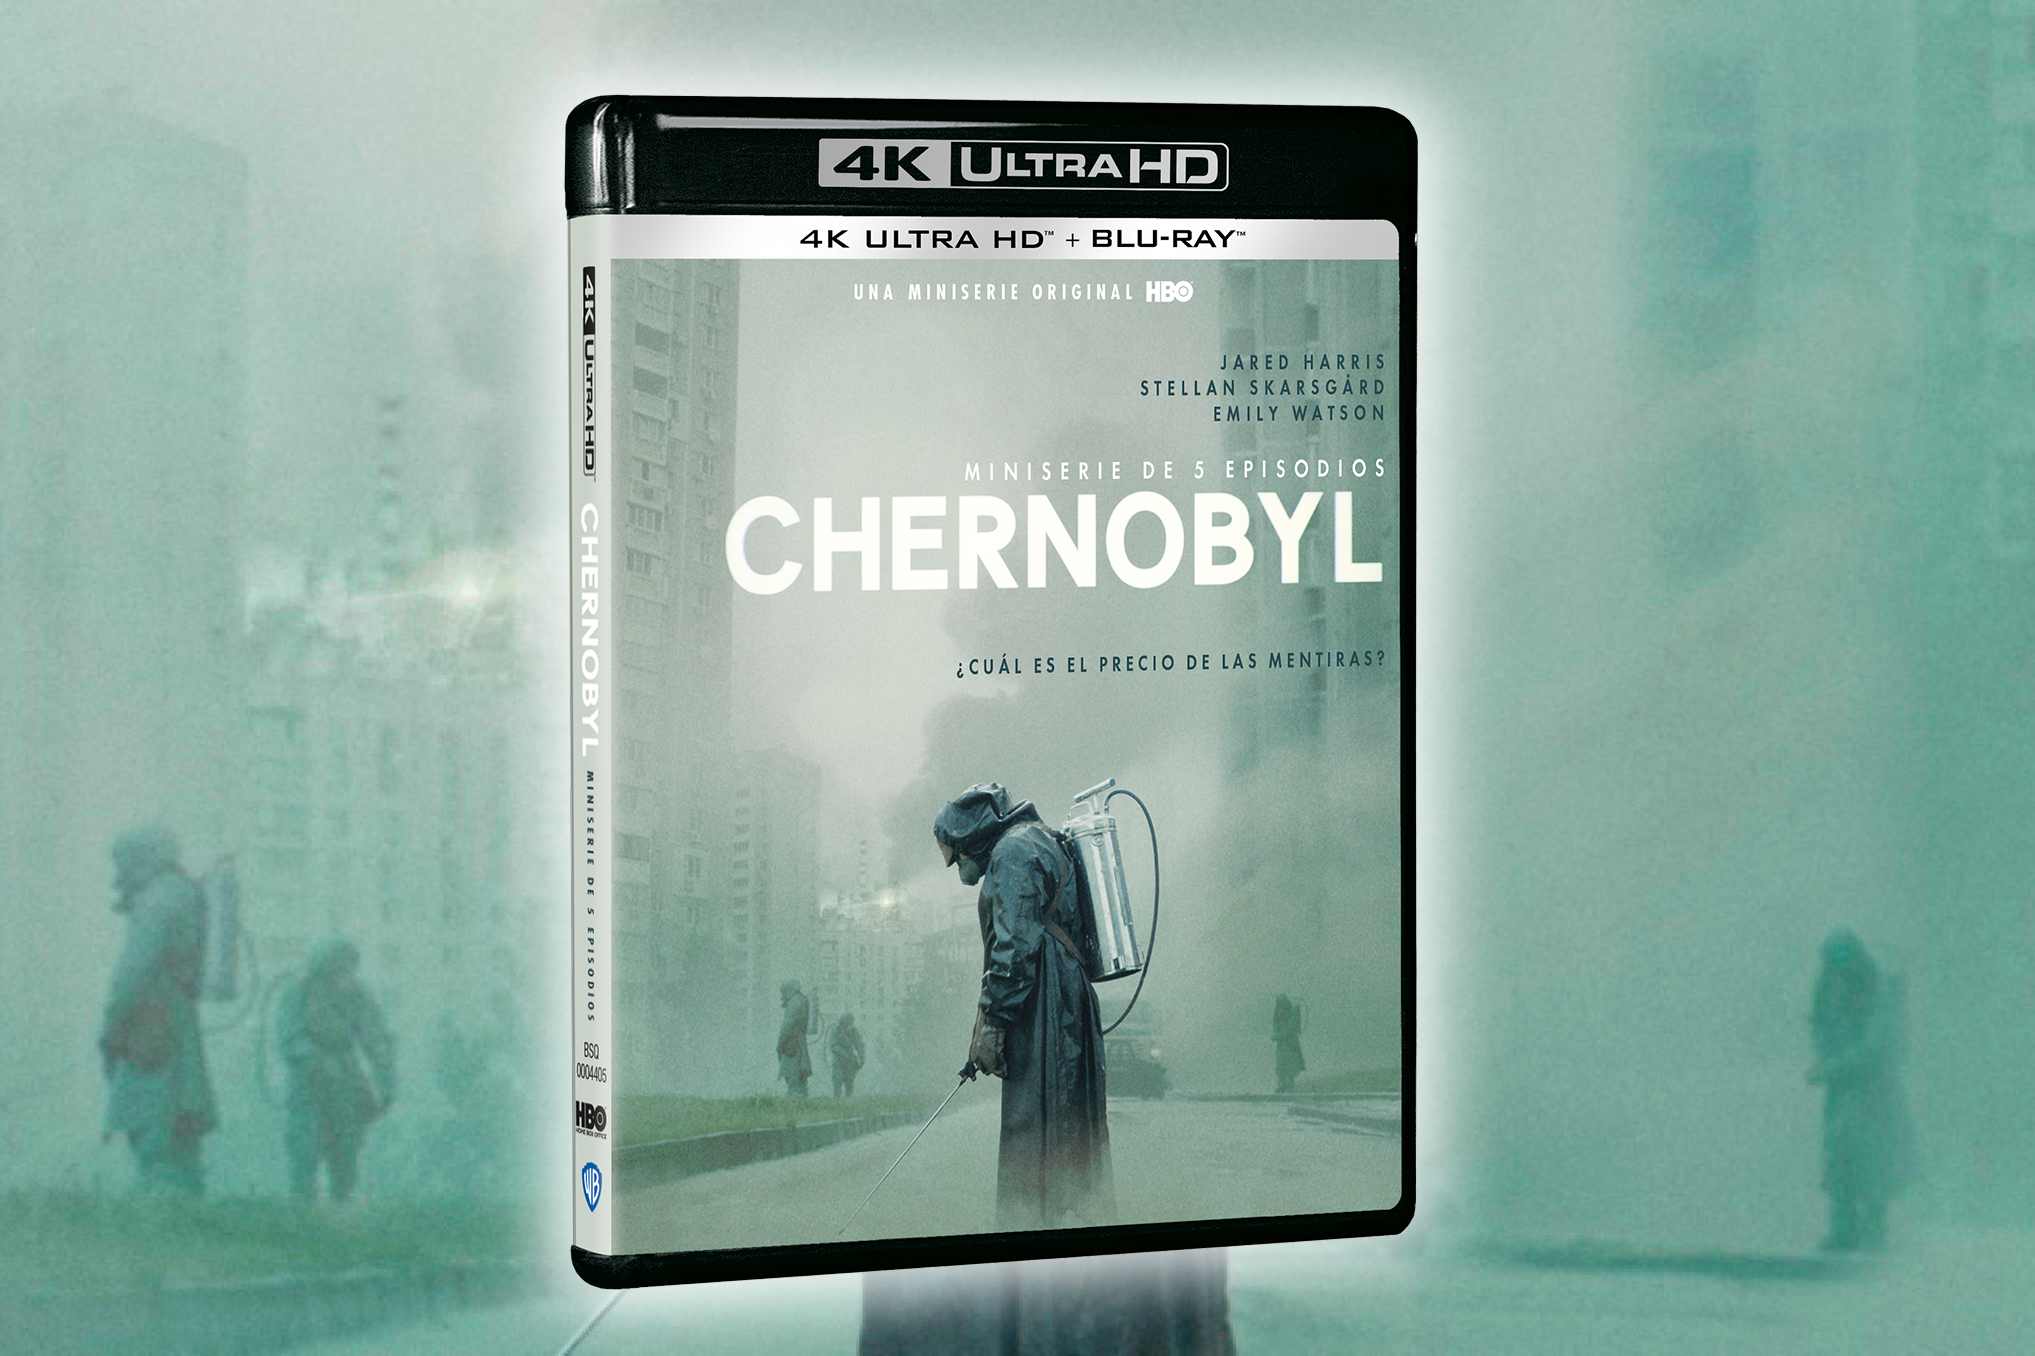 La miniserie de HBO ganadora de múltiples Premios Emmy y Globos de Oro, Chernobyl, llega de la mano de Warner Bros. Home Entertainment en 4K Ultra HD a partir del 10 de diciembre. 